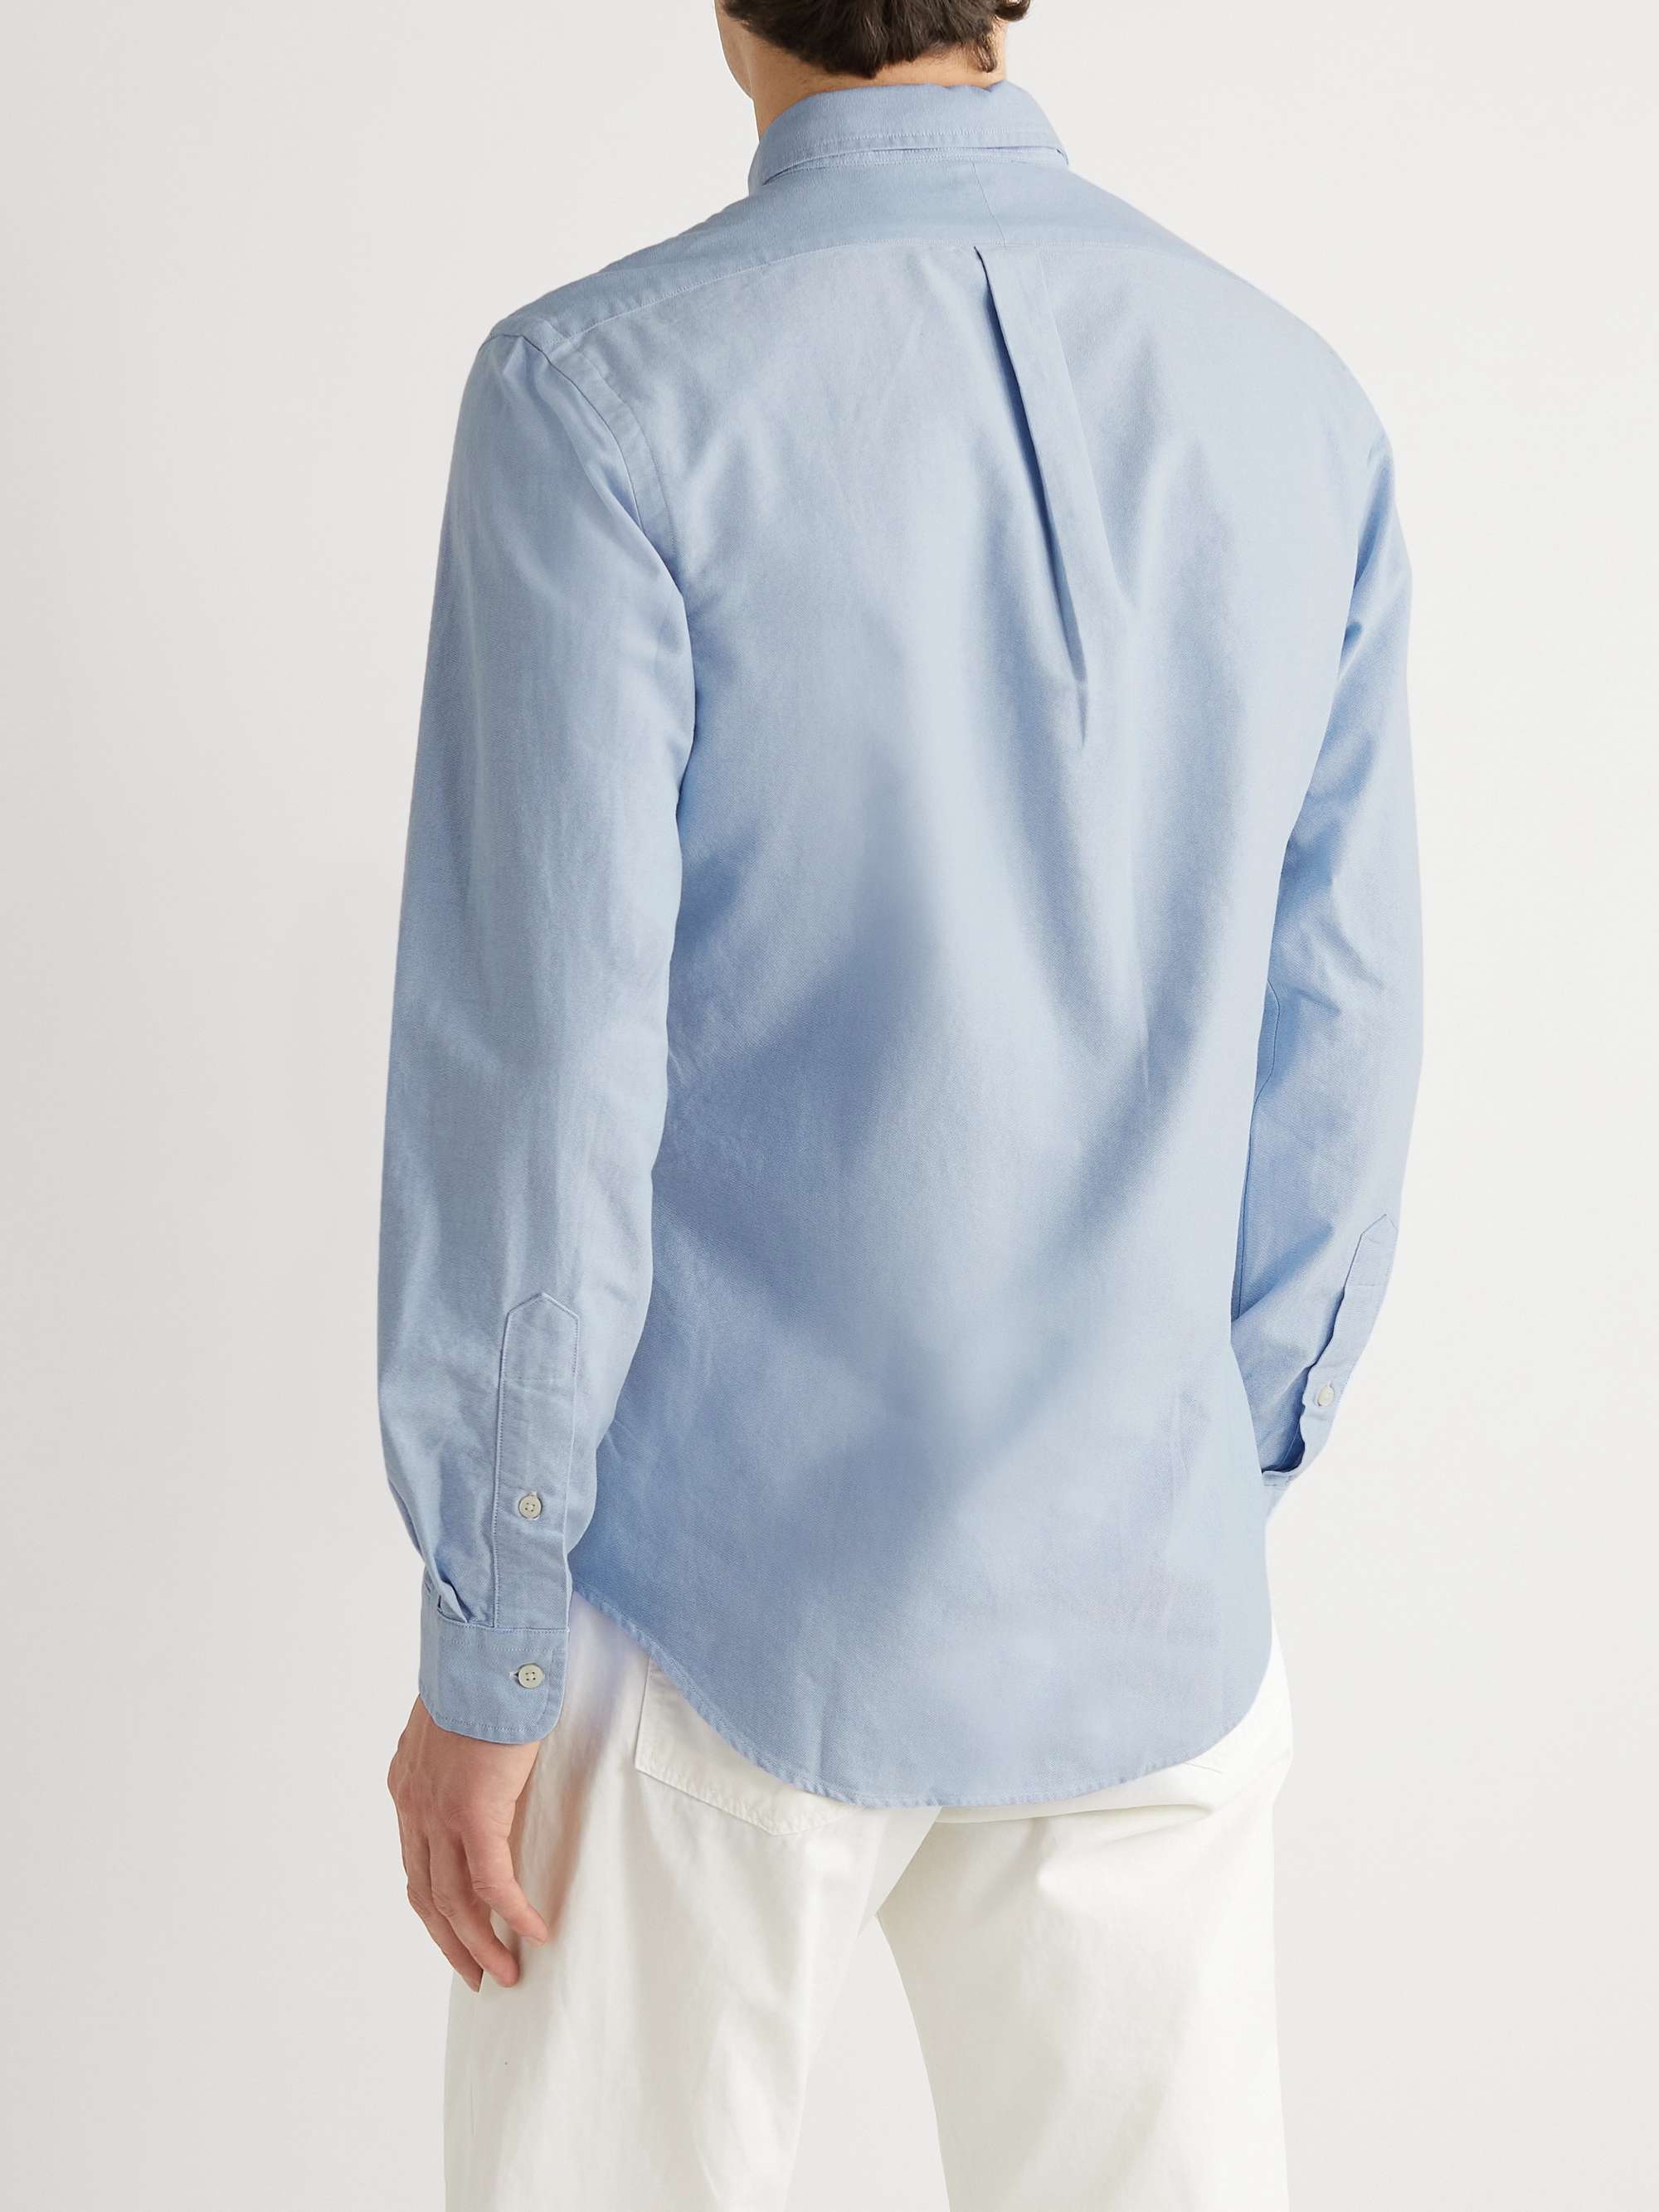 Onderzoek Nietje antiek Blue Slim-Fit Cotton Oxford Shirt | POLO RALPH LAUREN | MR PORTER